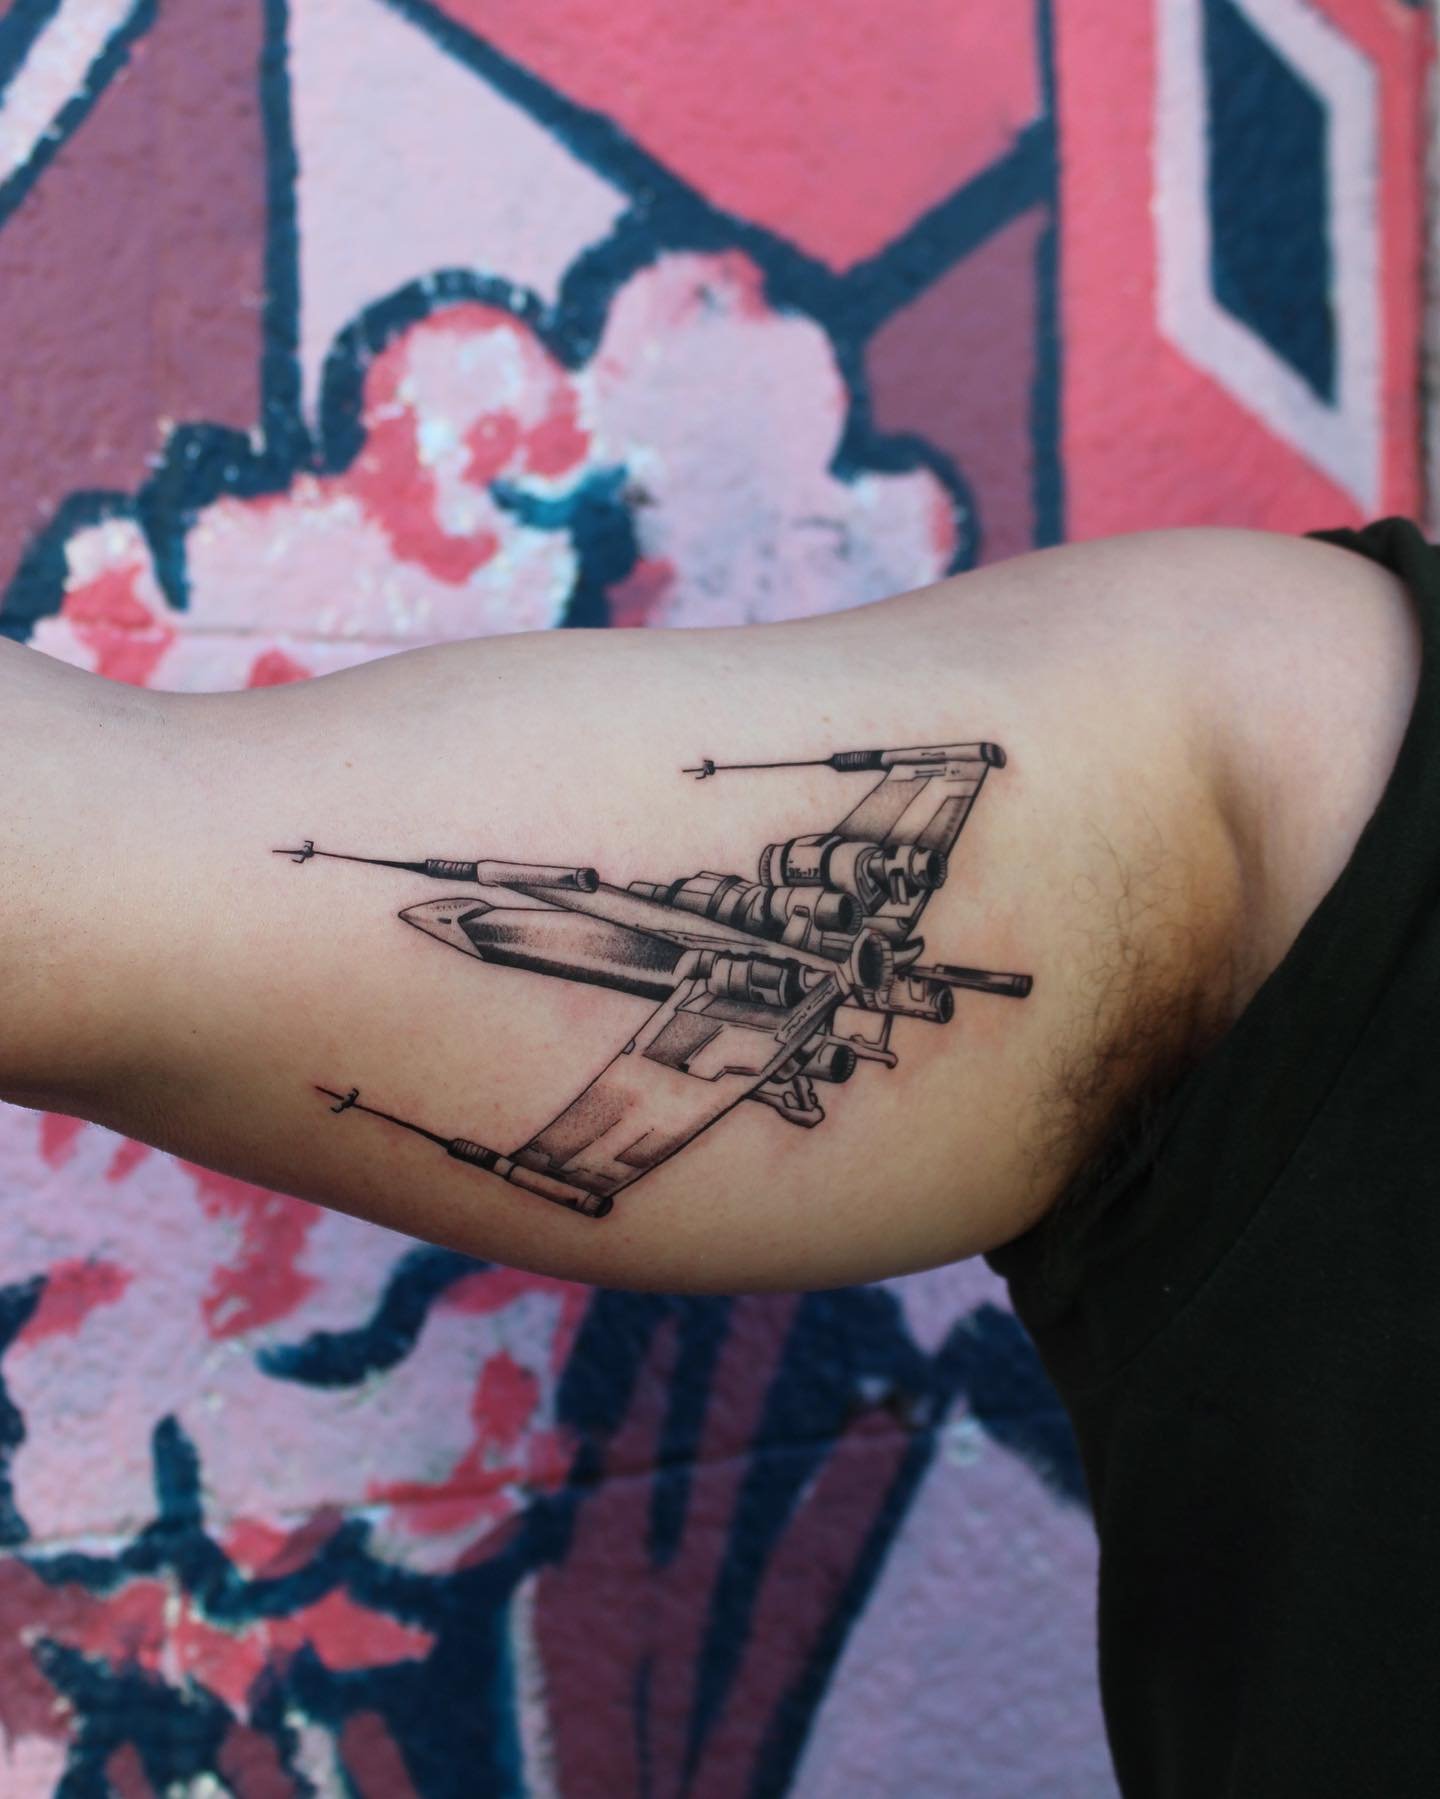 X-Wing original illustration for @thurmanart_ink 

Would you get a Star Wars tattoo??

kehrmietattoos.com to book
✧ 
✧
✧
✧ 
✧ 
#tattoo #inked #tattoos #art #blackandgrey #sf #nyc #qttr #blackwork #horror #flash #tattooed #design #tttism